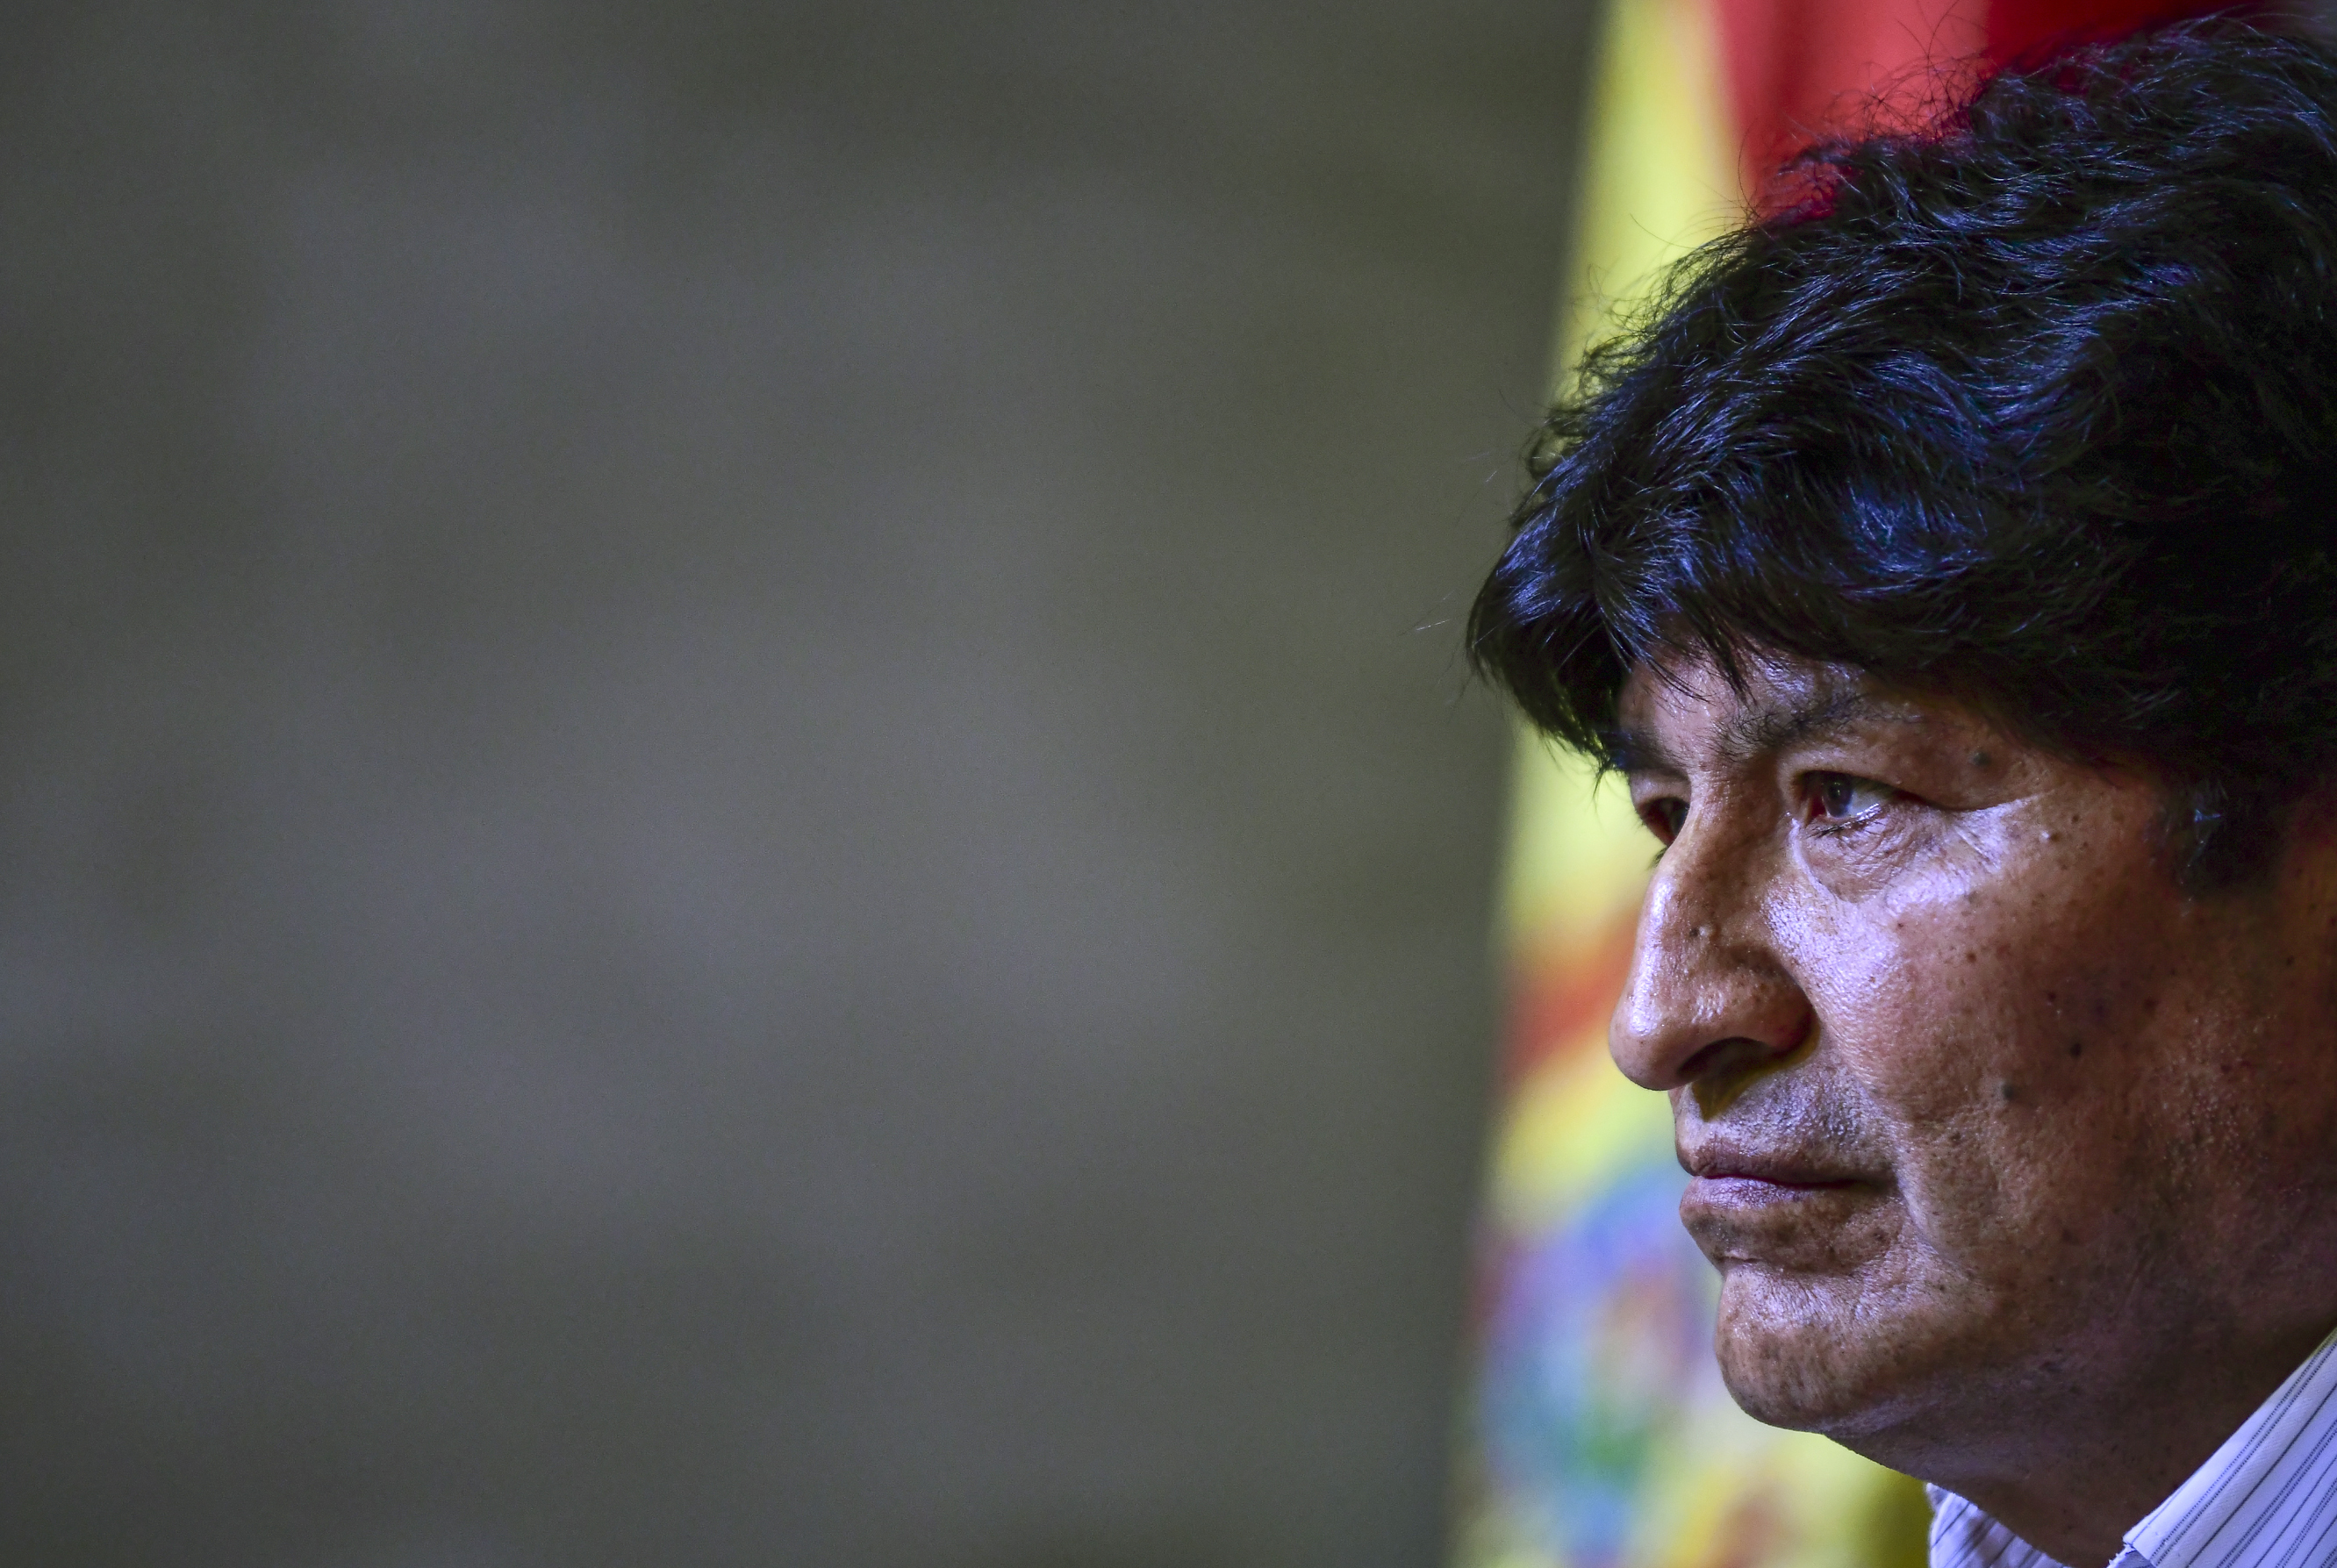 El partido de Evo Morales se enfrenta a varios pedidos de inhabilitación en Bolivia